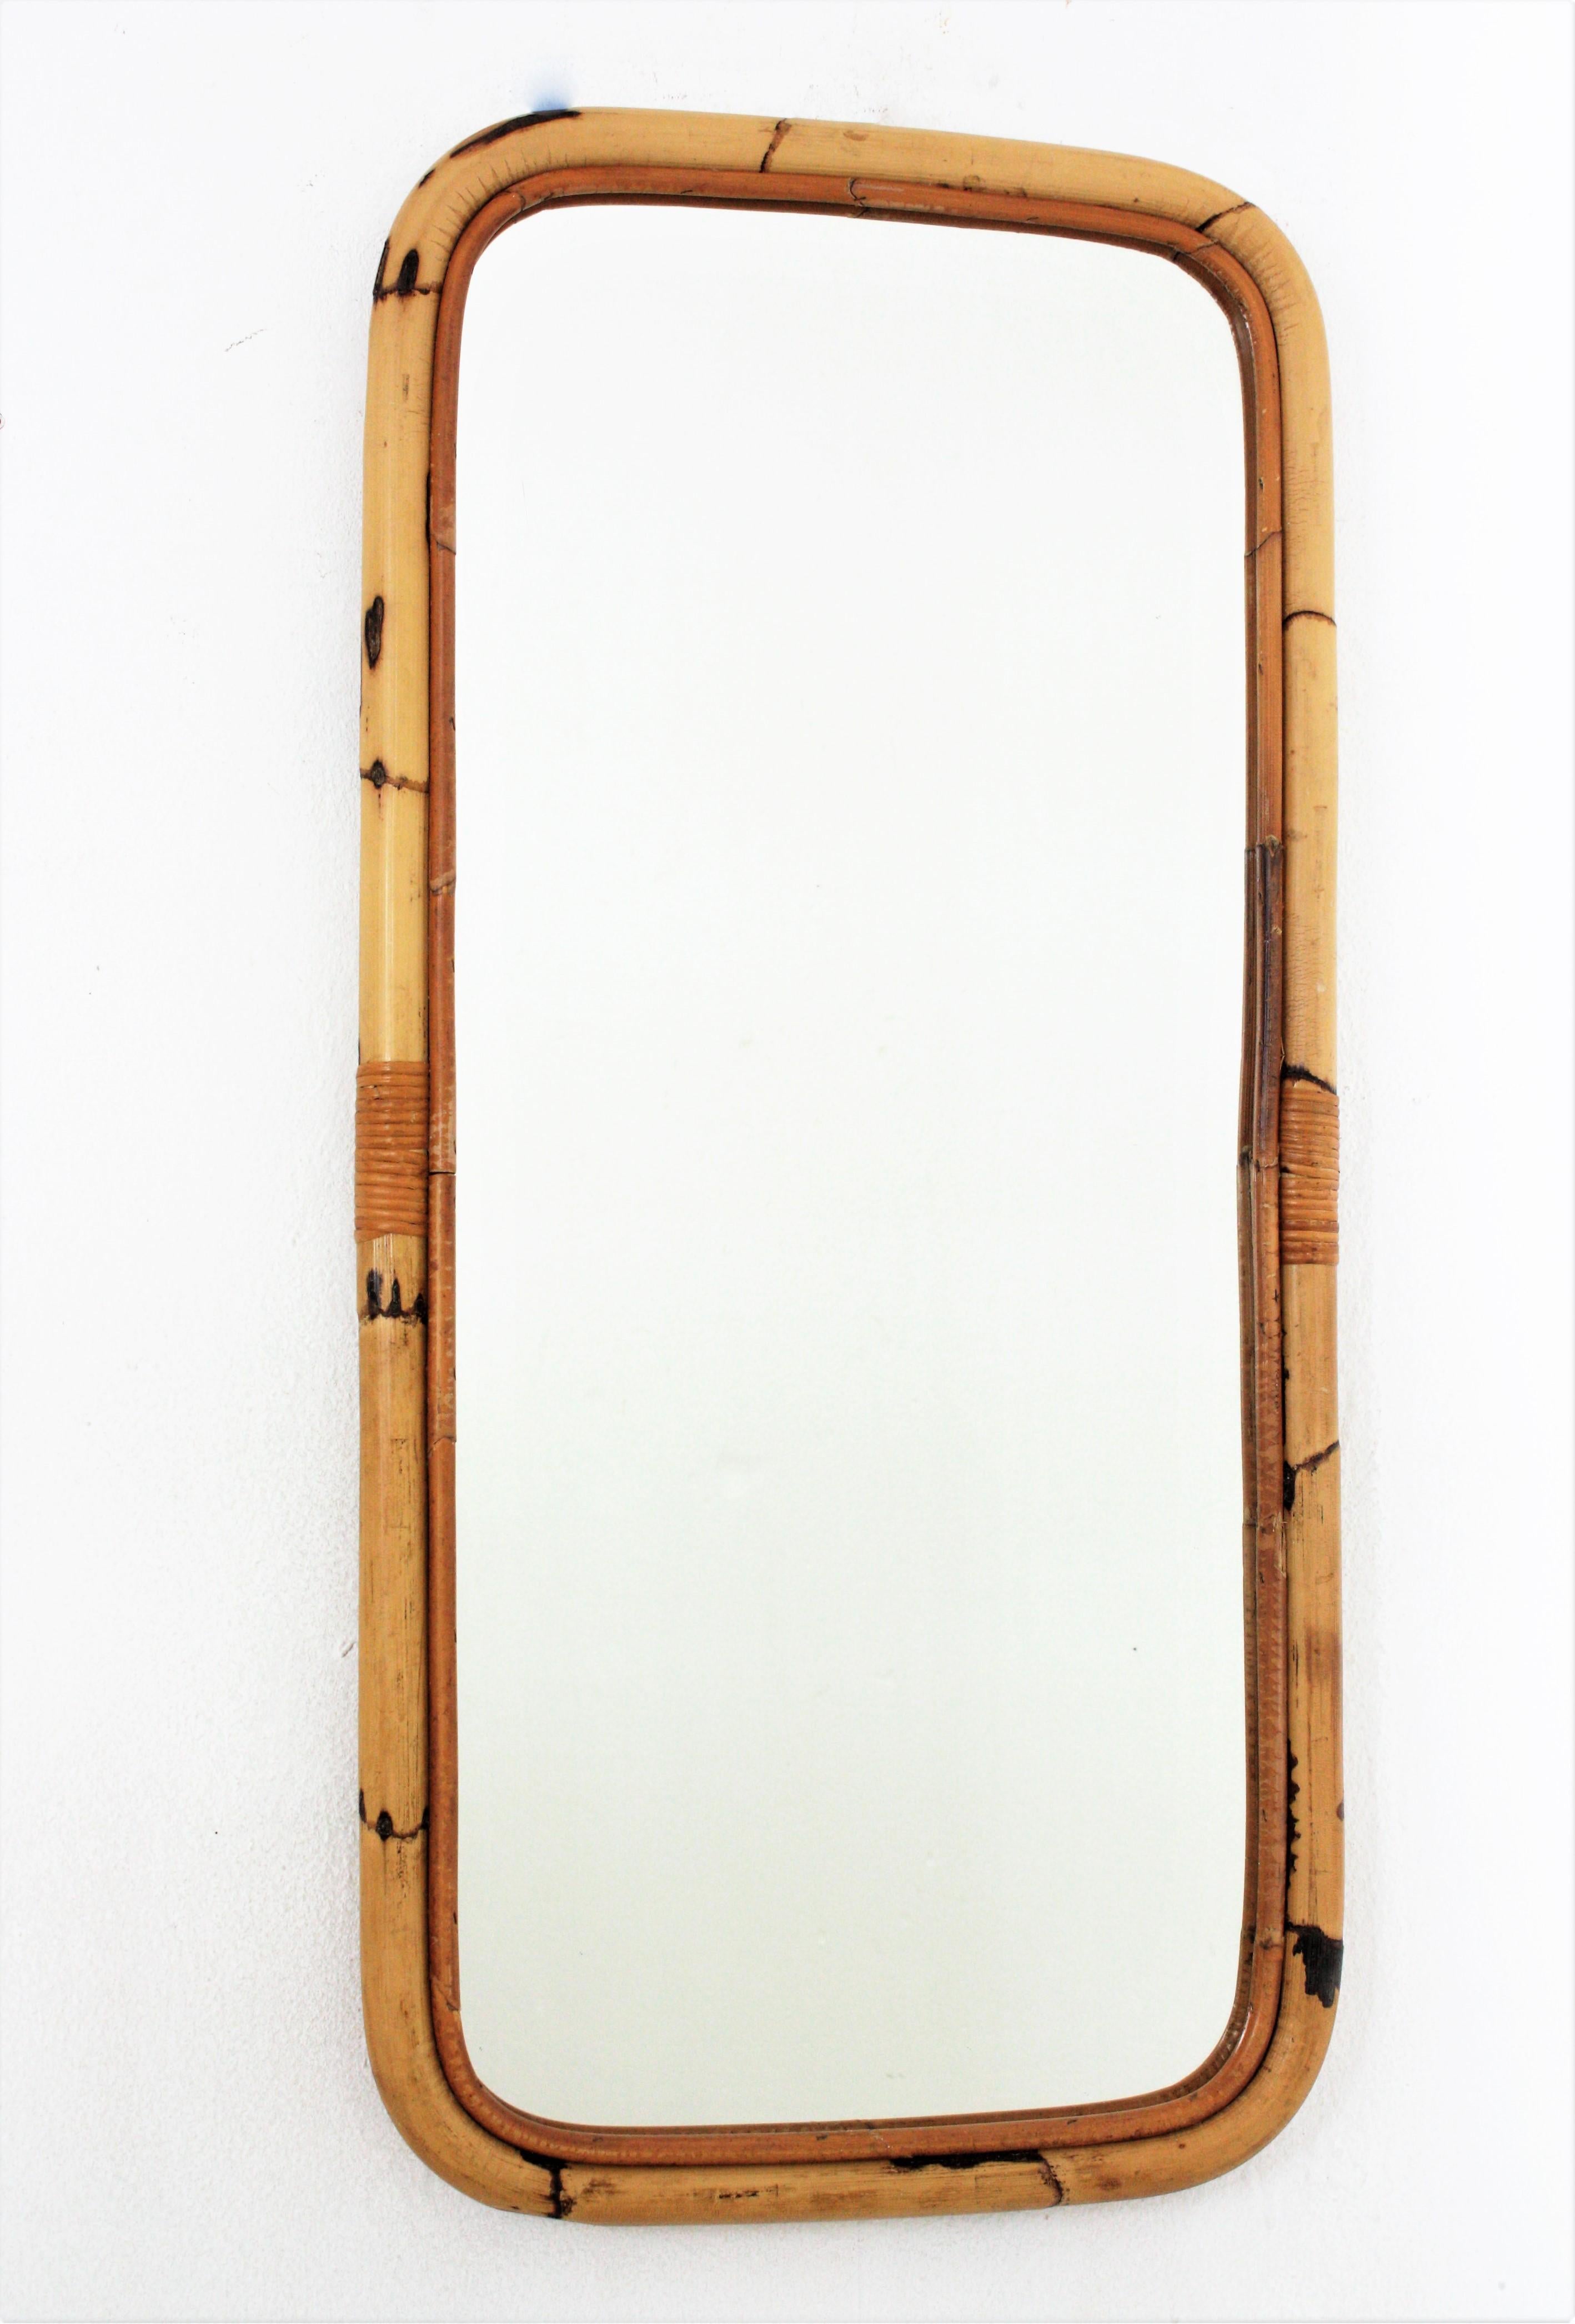 Rechteckiger hoher Spiegel, Bambus, Rattan
Auffälliger rechteckiger Spiegel, handgefertigt aus Bambusrohr. Spanien, 1960er Jahre.
Rechteckiger Rahmen aus Bambus mit abgerundeten Ecken. 
Dieser Spiegel ist in ausgezeichnetem Vintage-Zustand.
Es ist